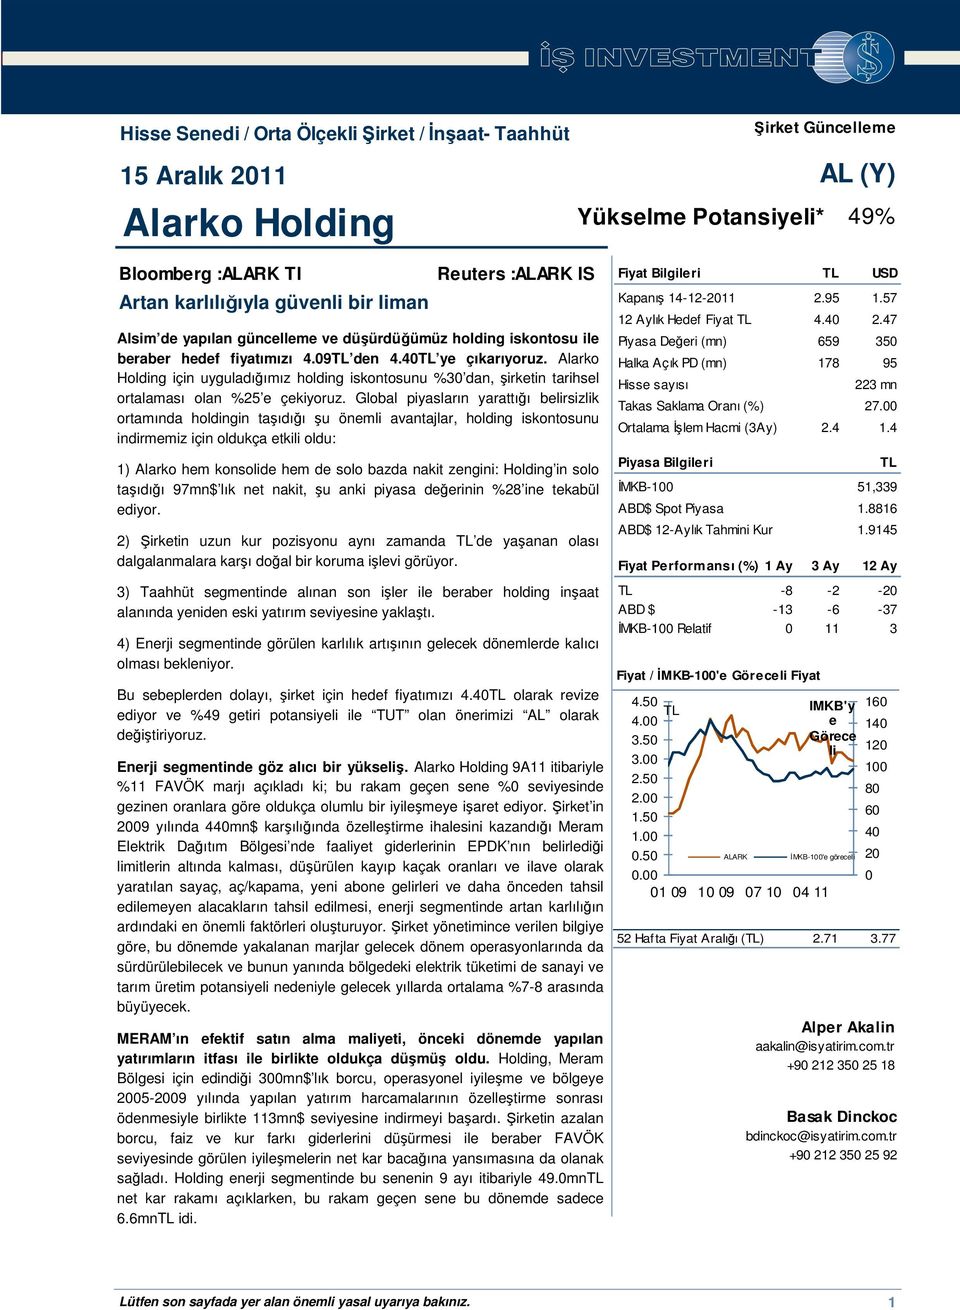 Alarko Holding için uyguladığımız holding iskontosunu %30 dan, şirketin tarihsel ortalaması olan %25 e çekiyoruz.